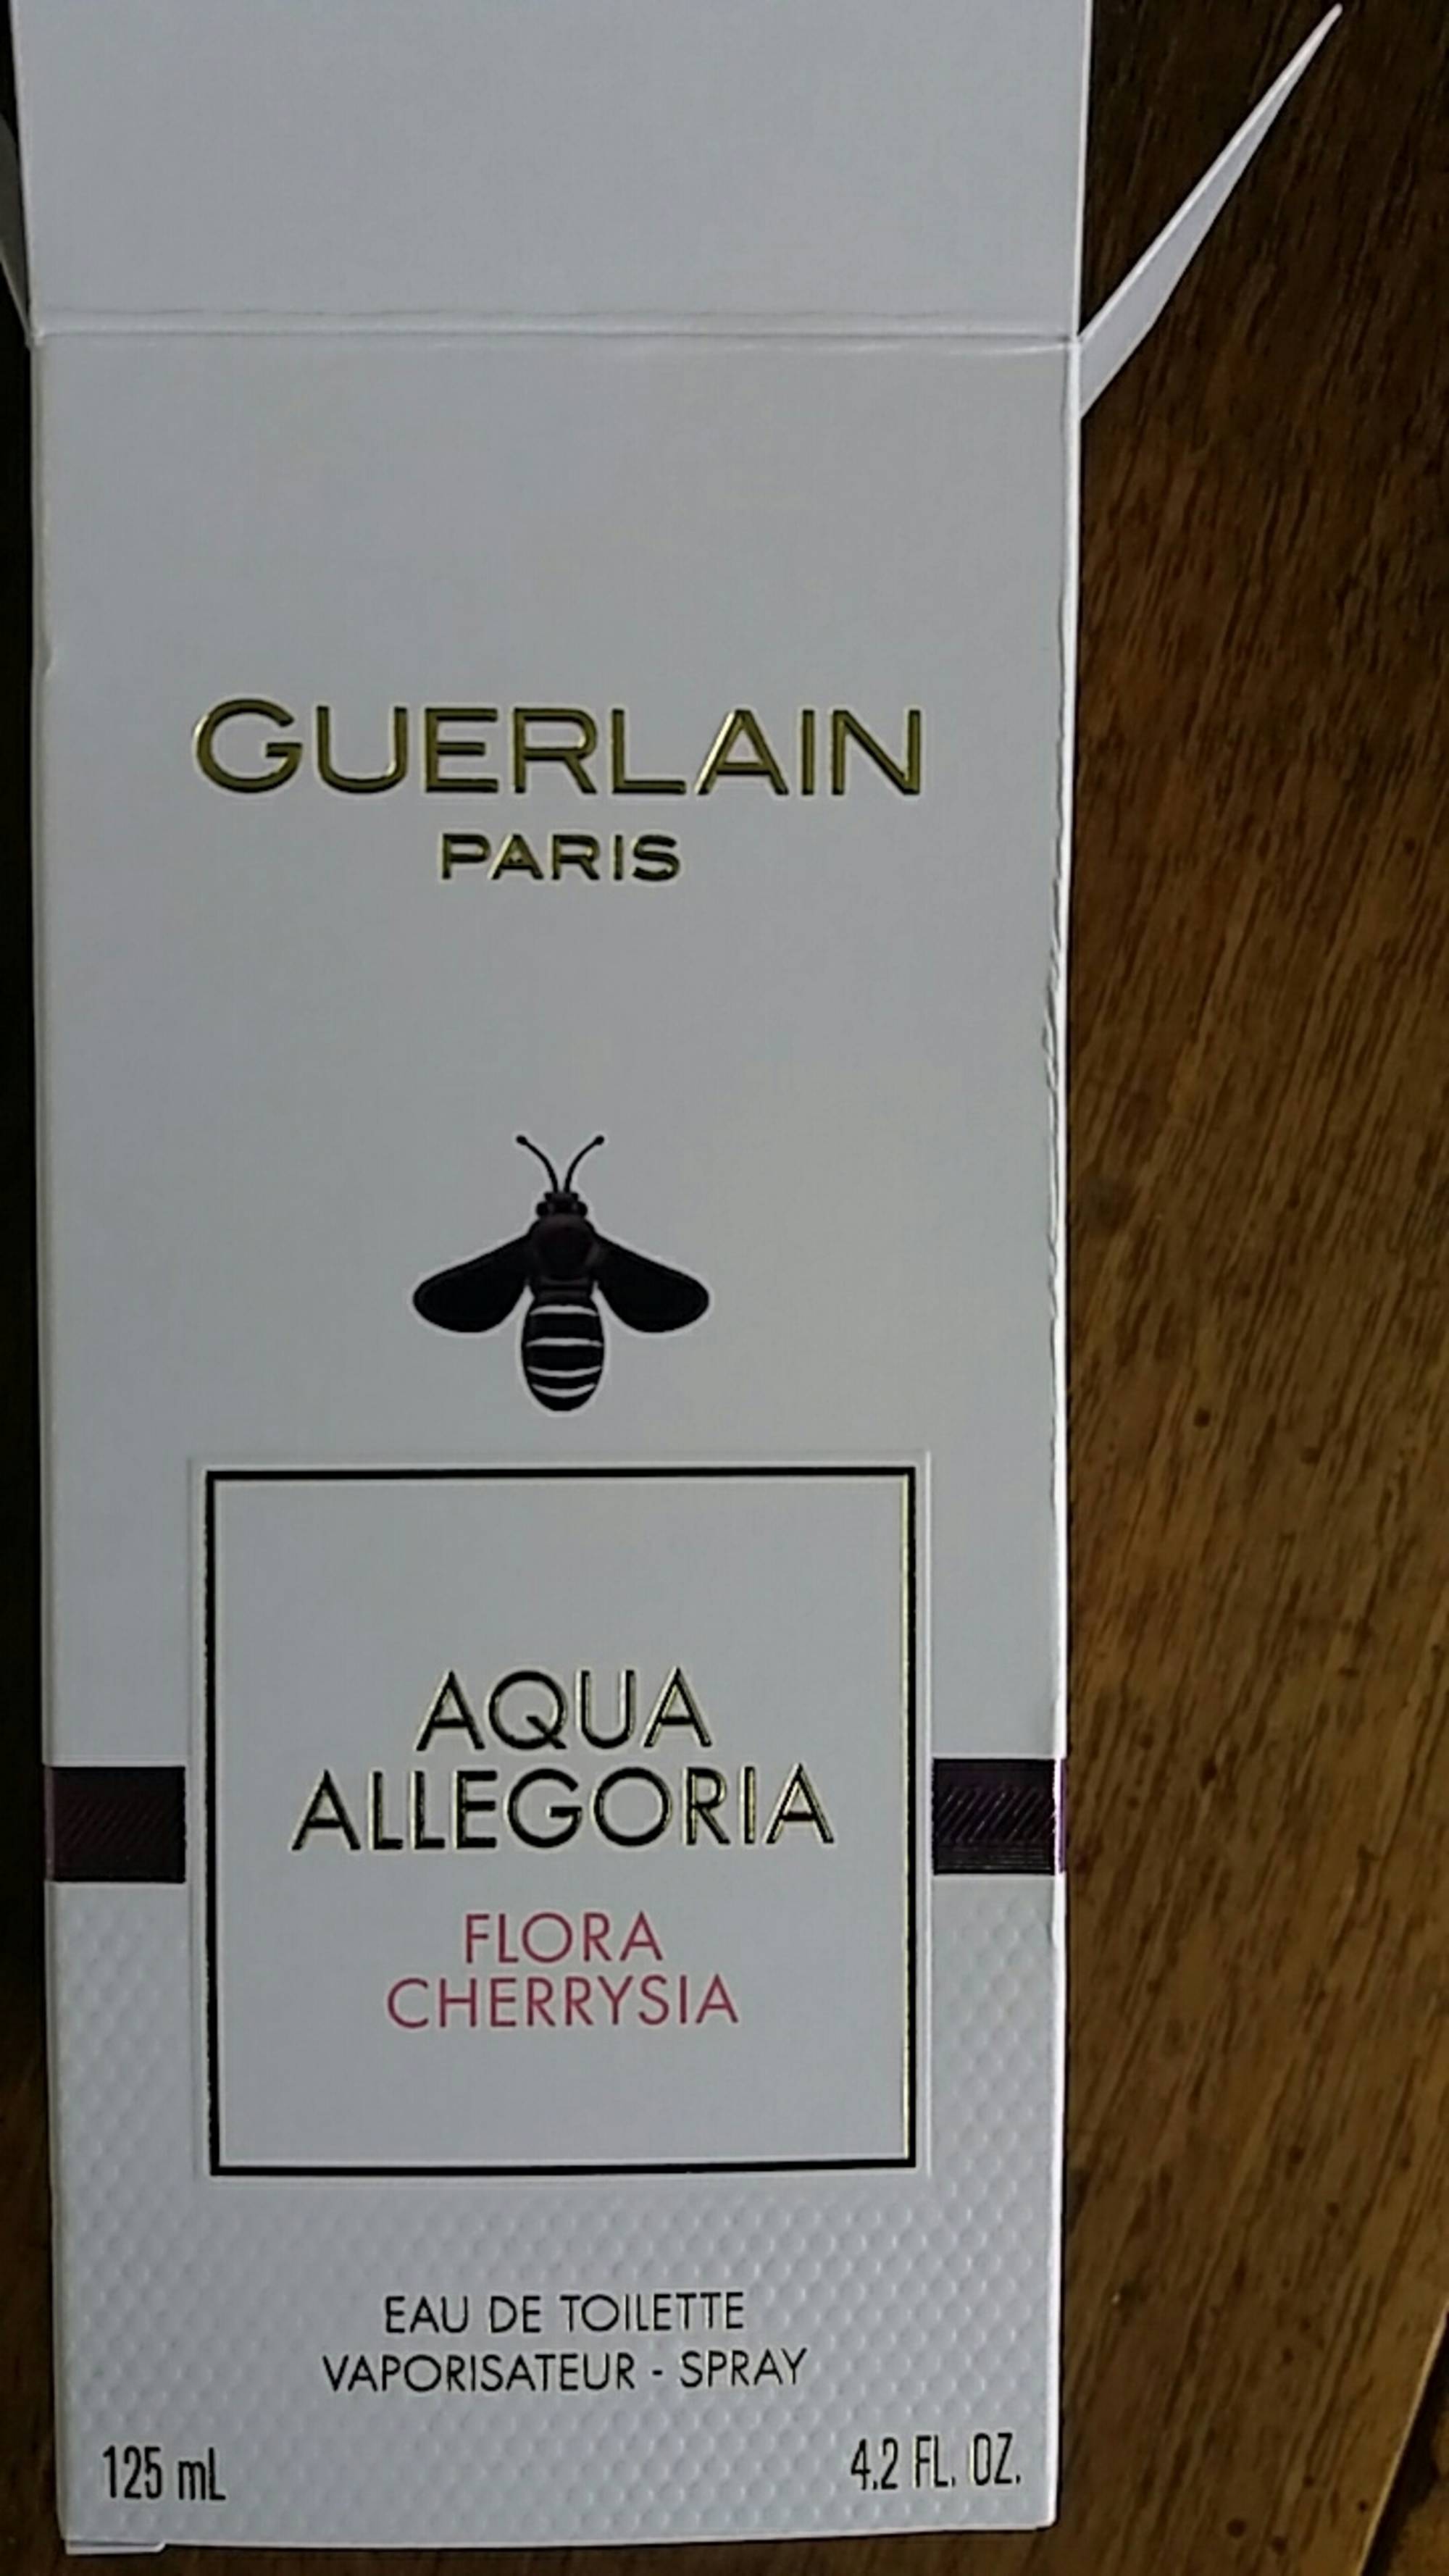 GUERLAIN - Aqua allegoria flora cherrysia - Eau de toilette